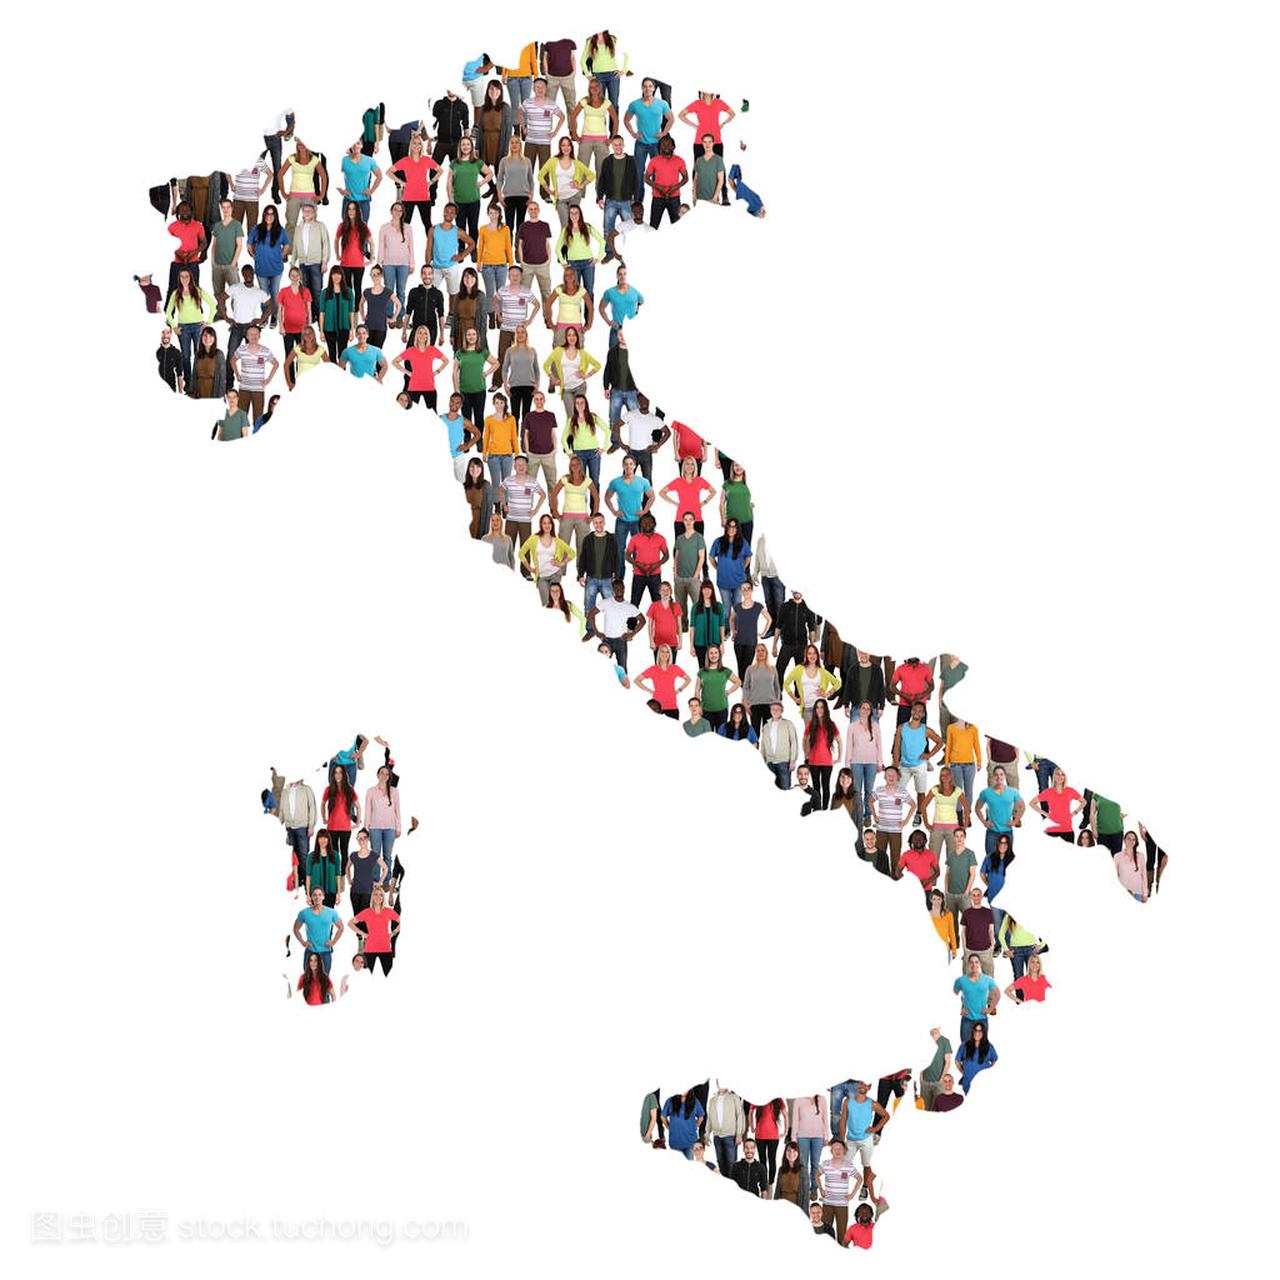 意大利人融合移民多元文化组映射